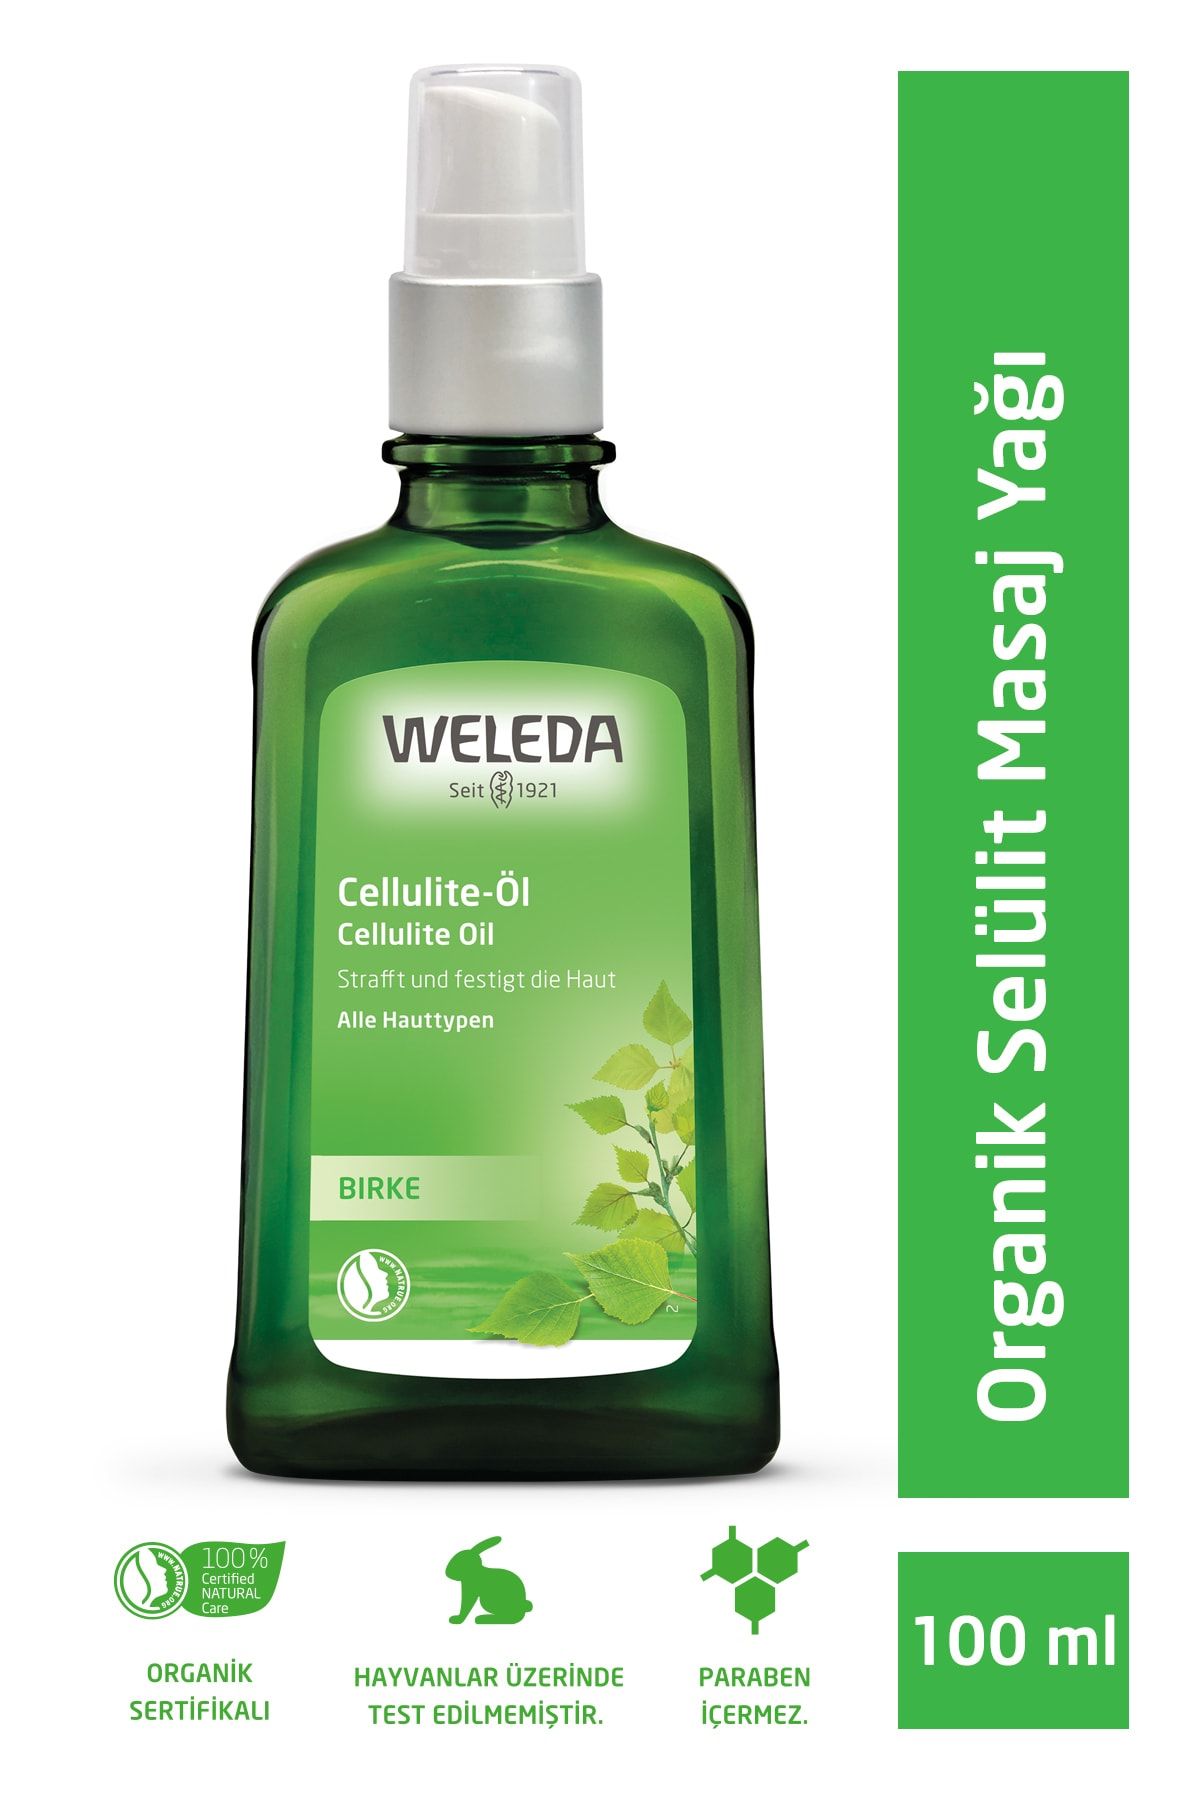 Weleda Birke Cellulite-oil Selülit Yağı 100ml